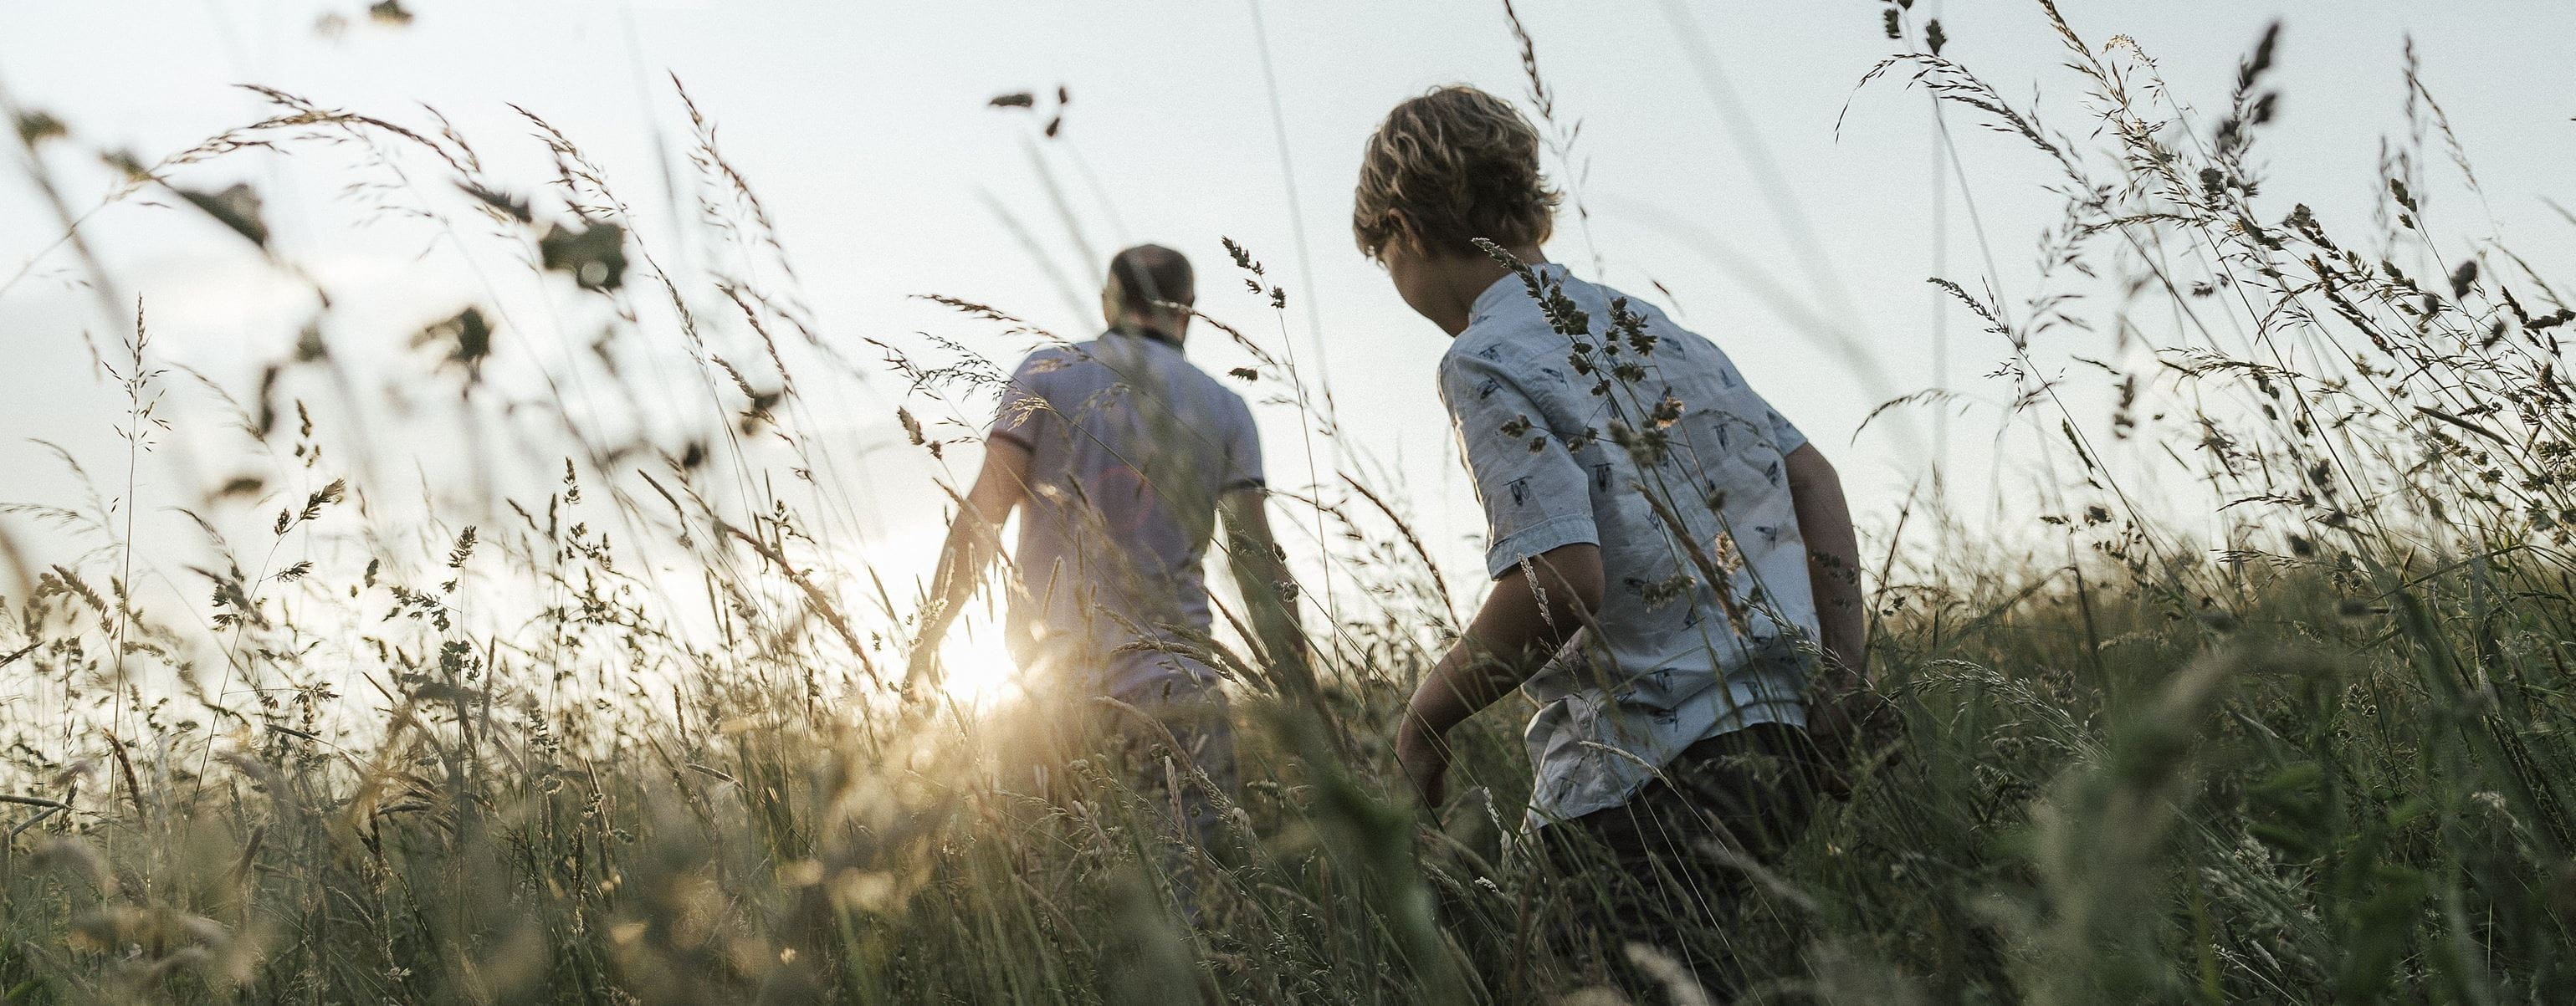 pai e filho a caminhar num campo com plantas secas